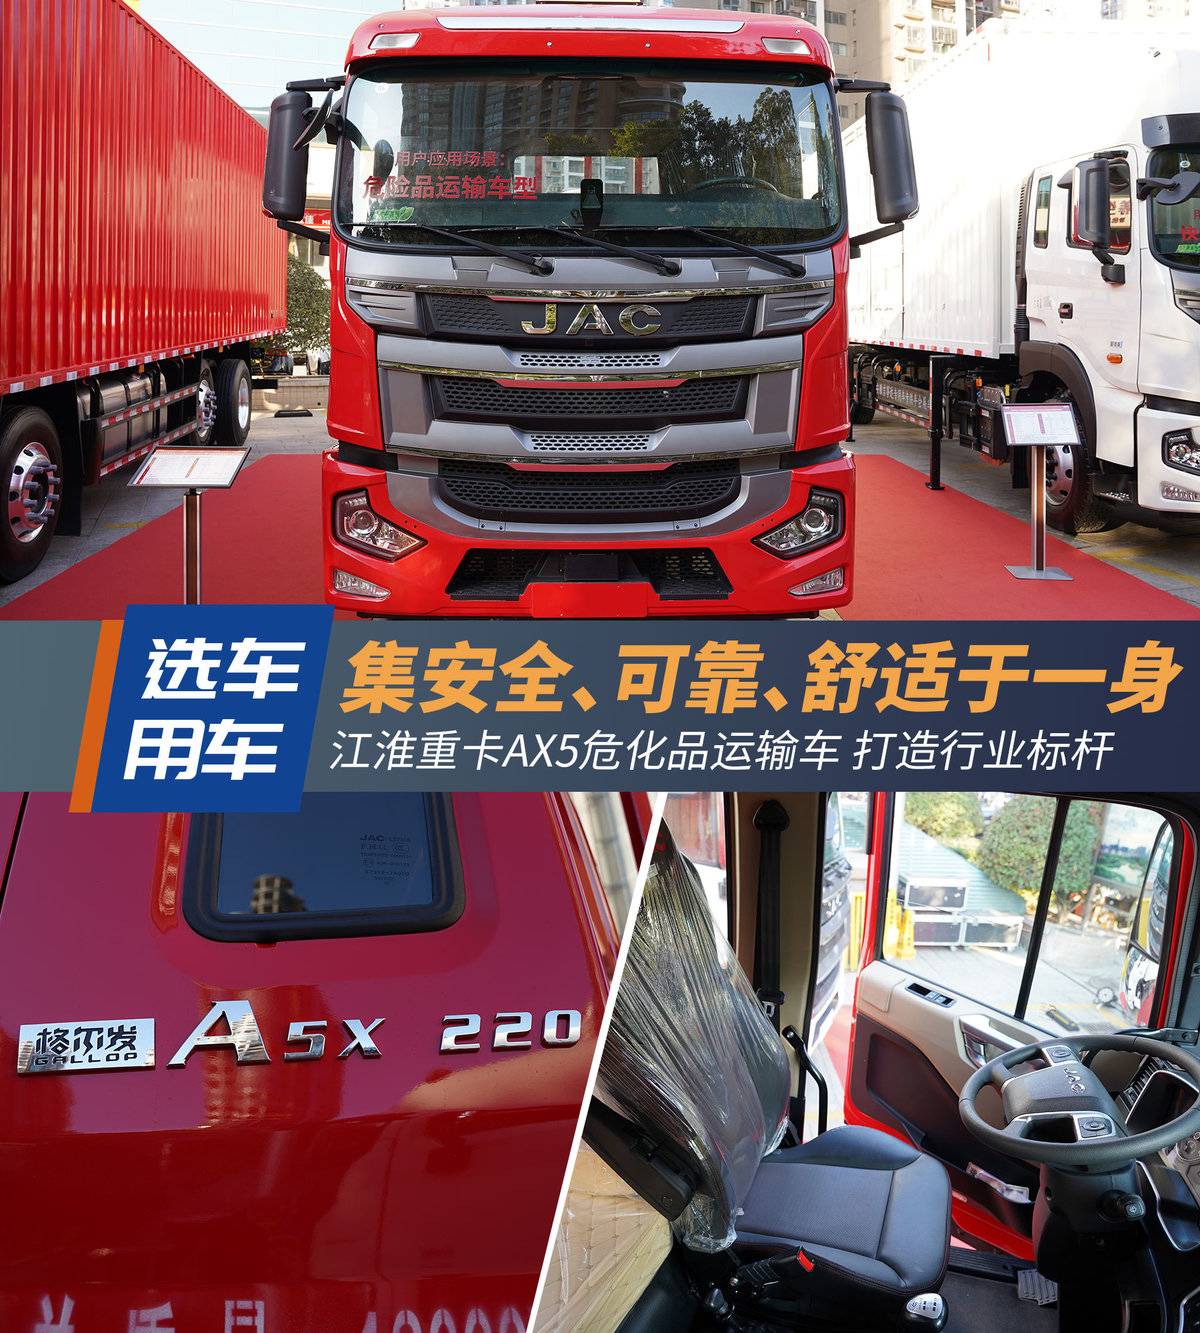 江淮重卡A5X危化品4×2 让运输安全可靠!